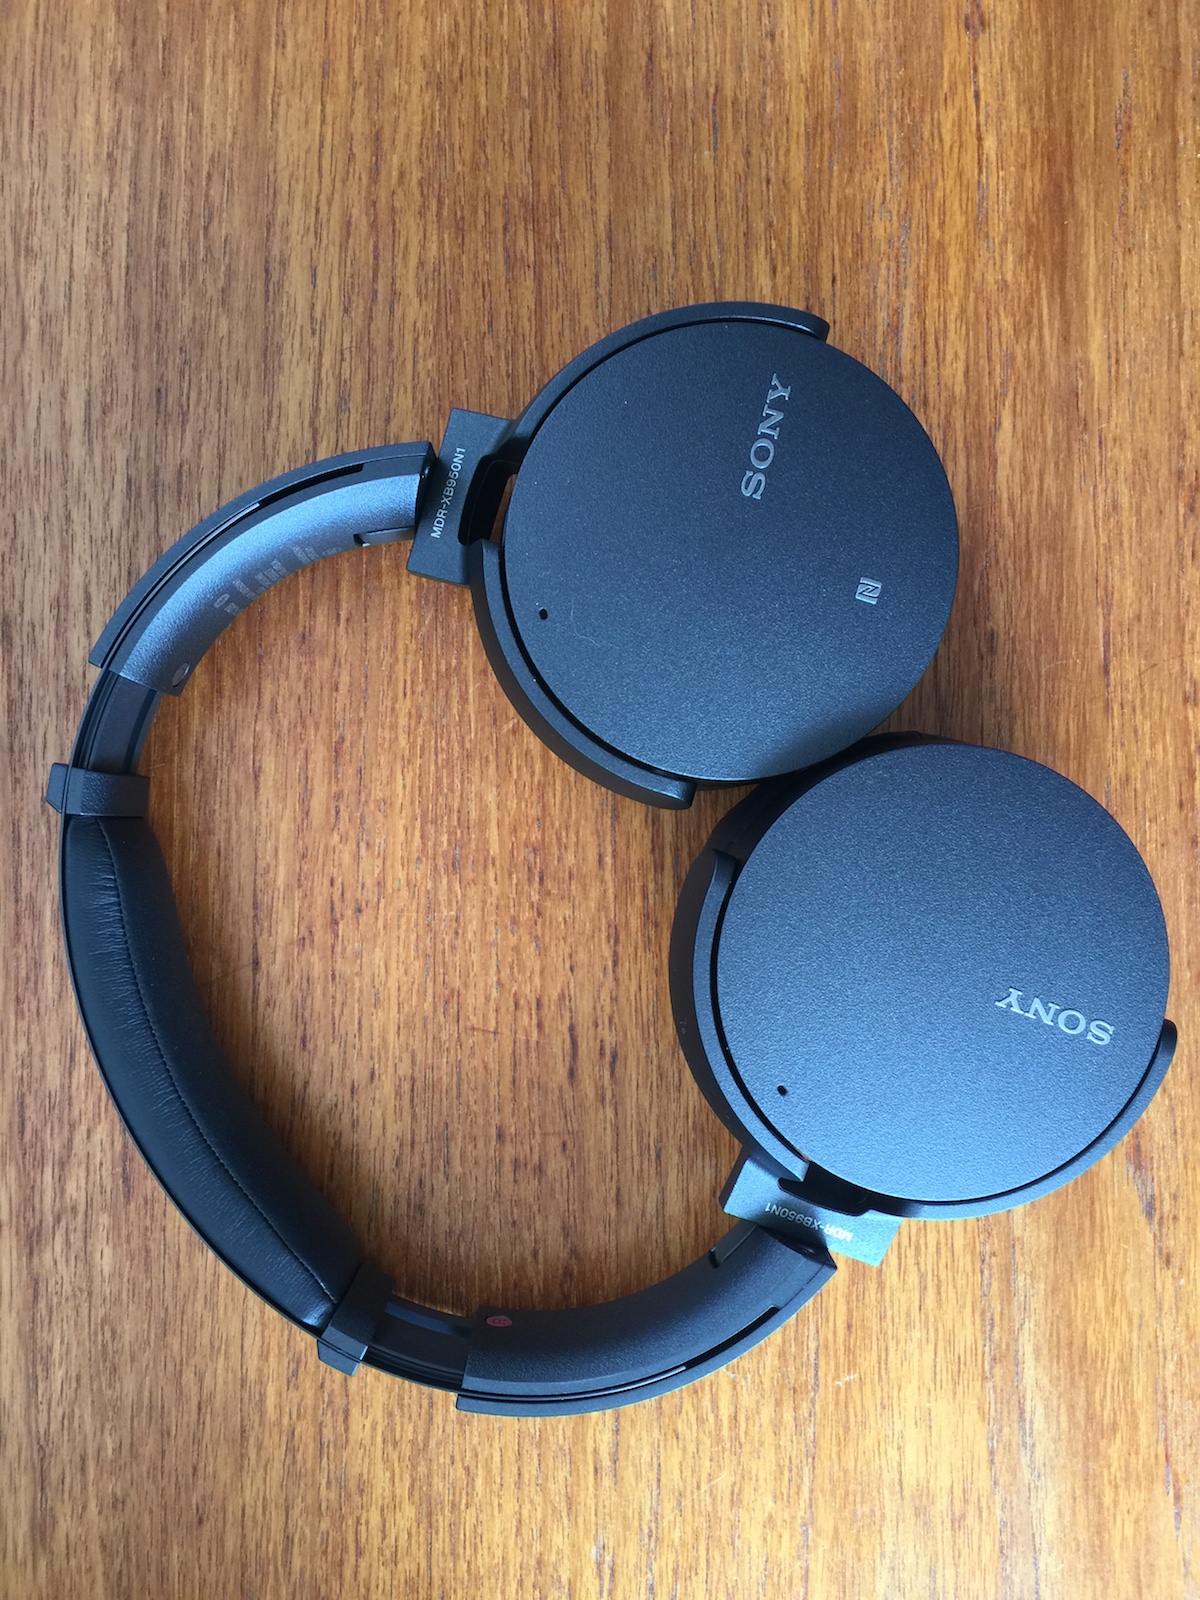 Sony mdr xb950n1 headphones